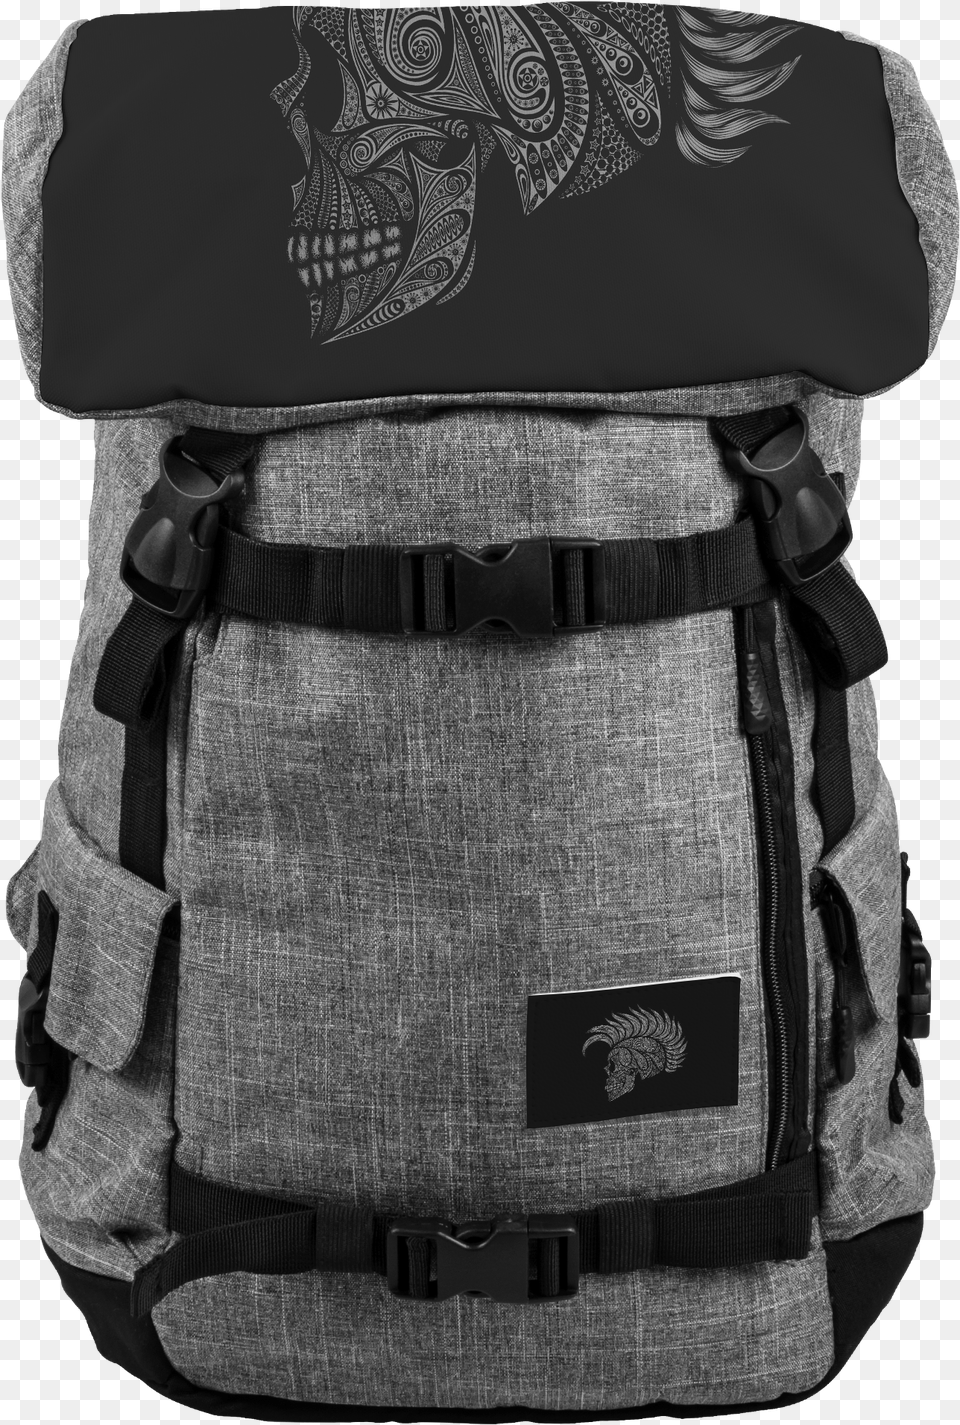 Mohawk Skull Backpack Destiny Backpack, Bag, Clothing, Coat Free Png